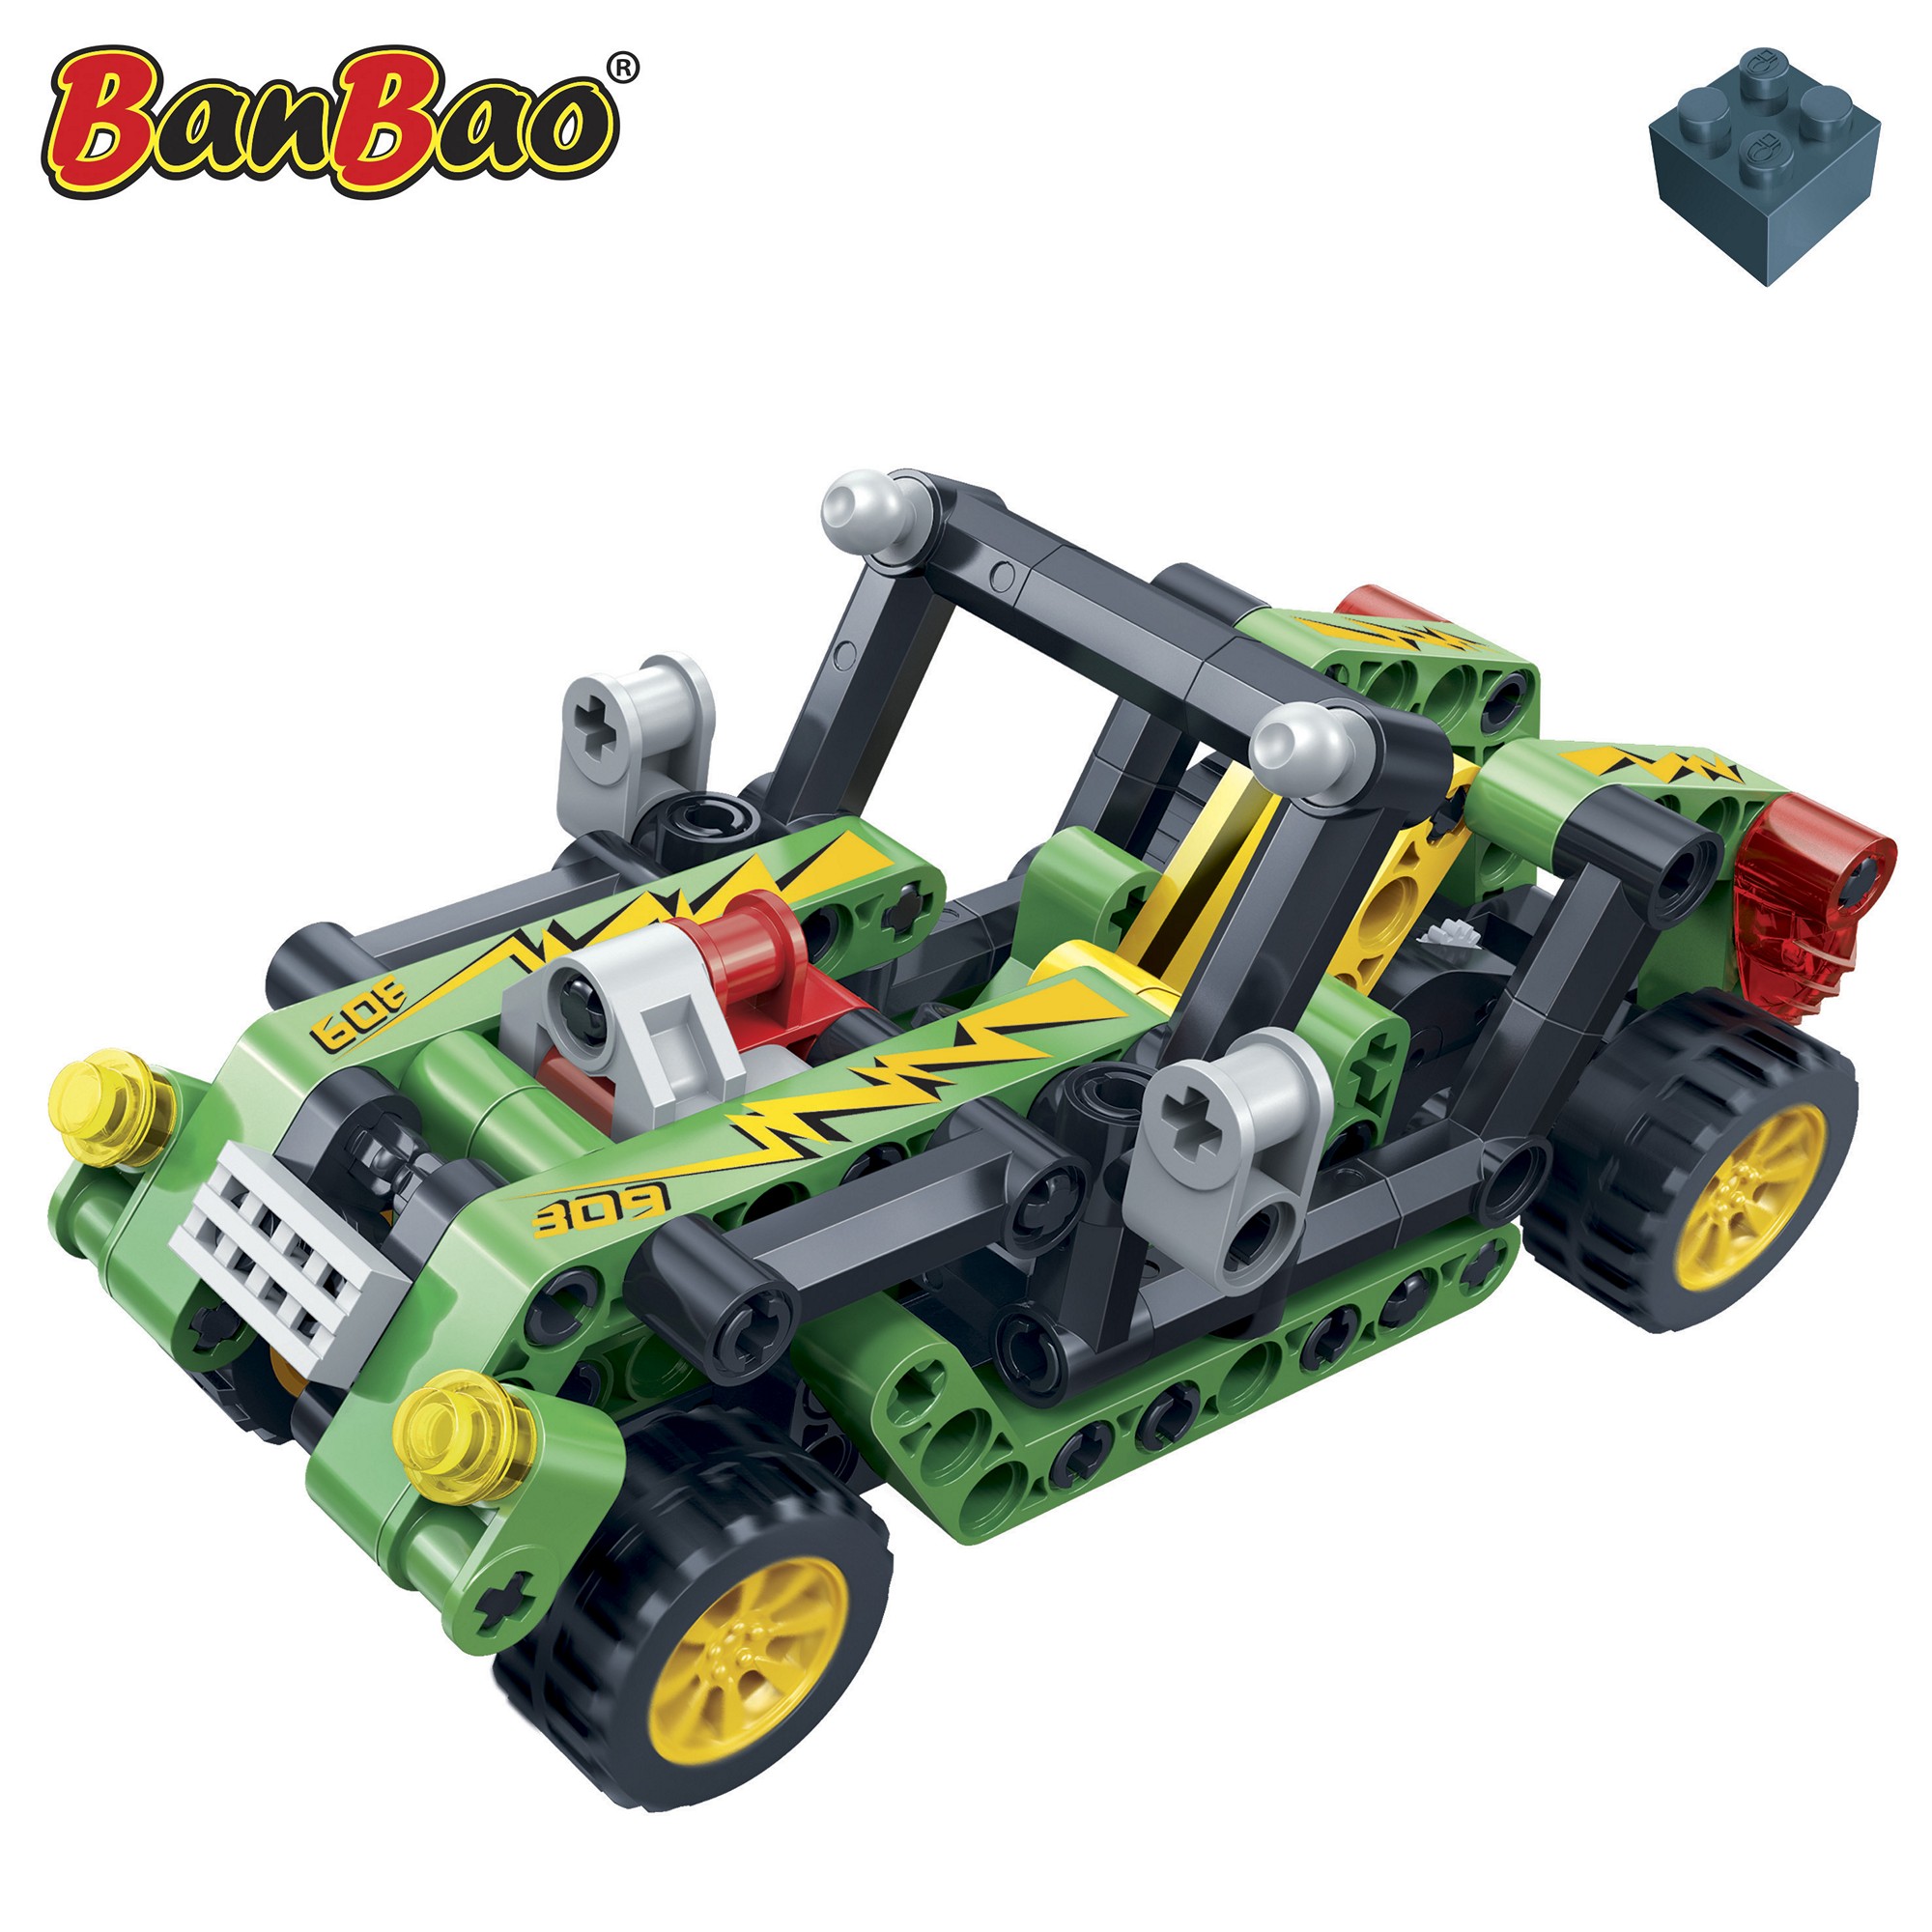 Kinder Geschenk Konstruktions Spielzeug Bausteine Baukästen Cabrio Sunrise Hi-Tech Banbao 6962